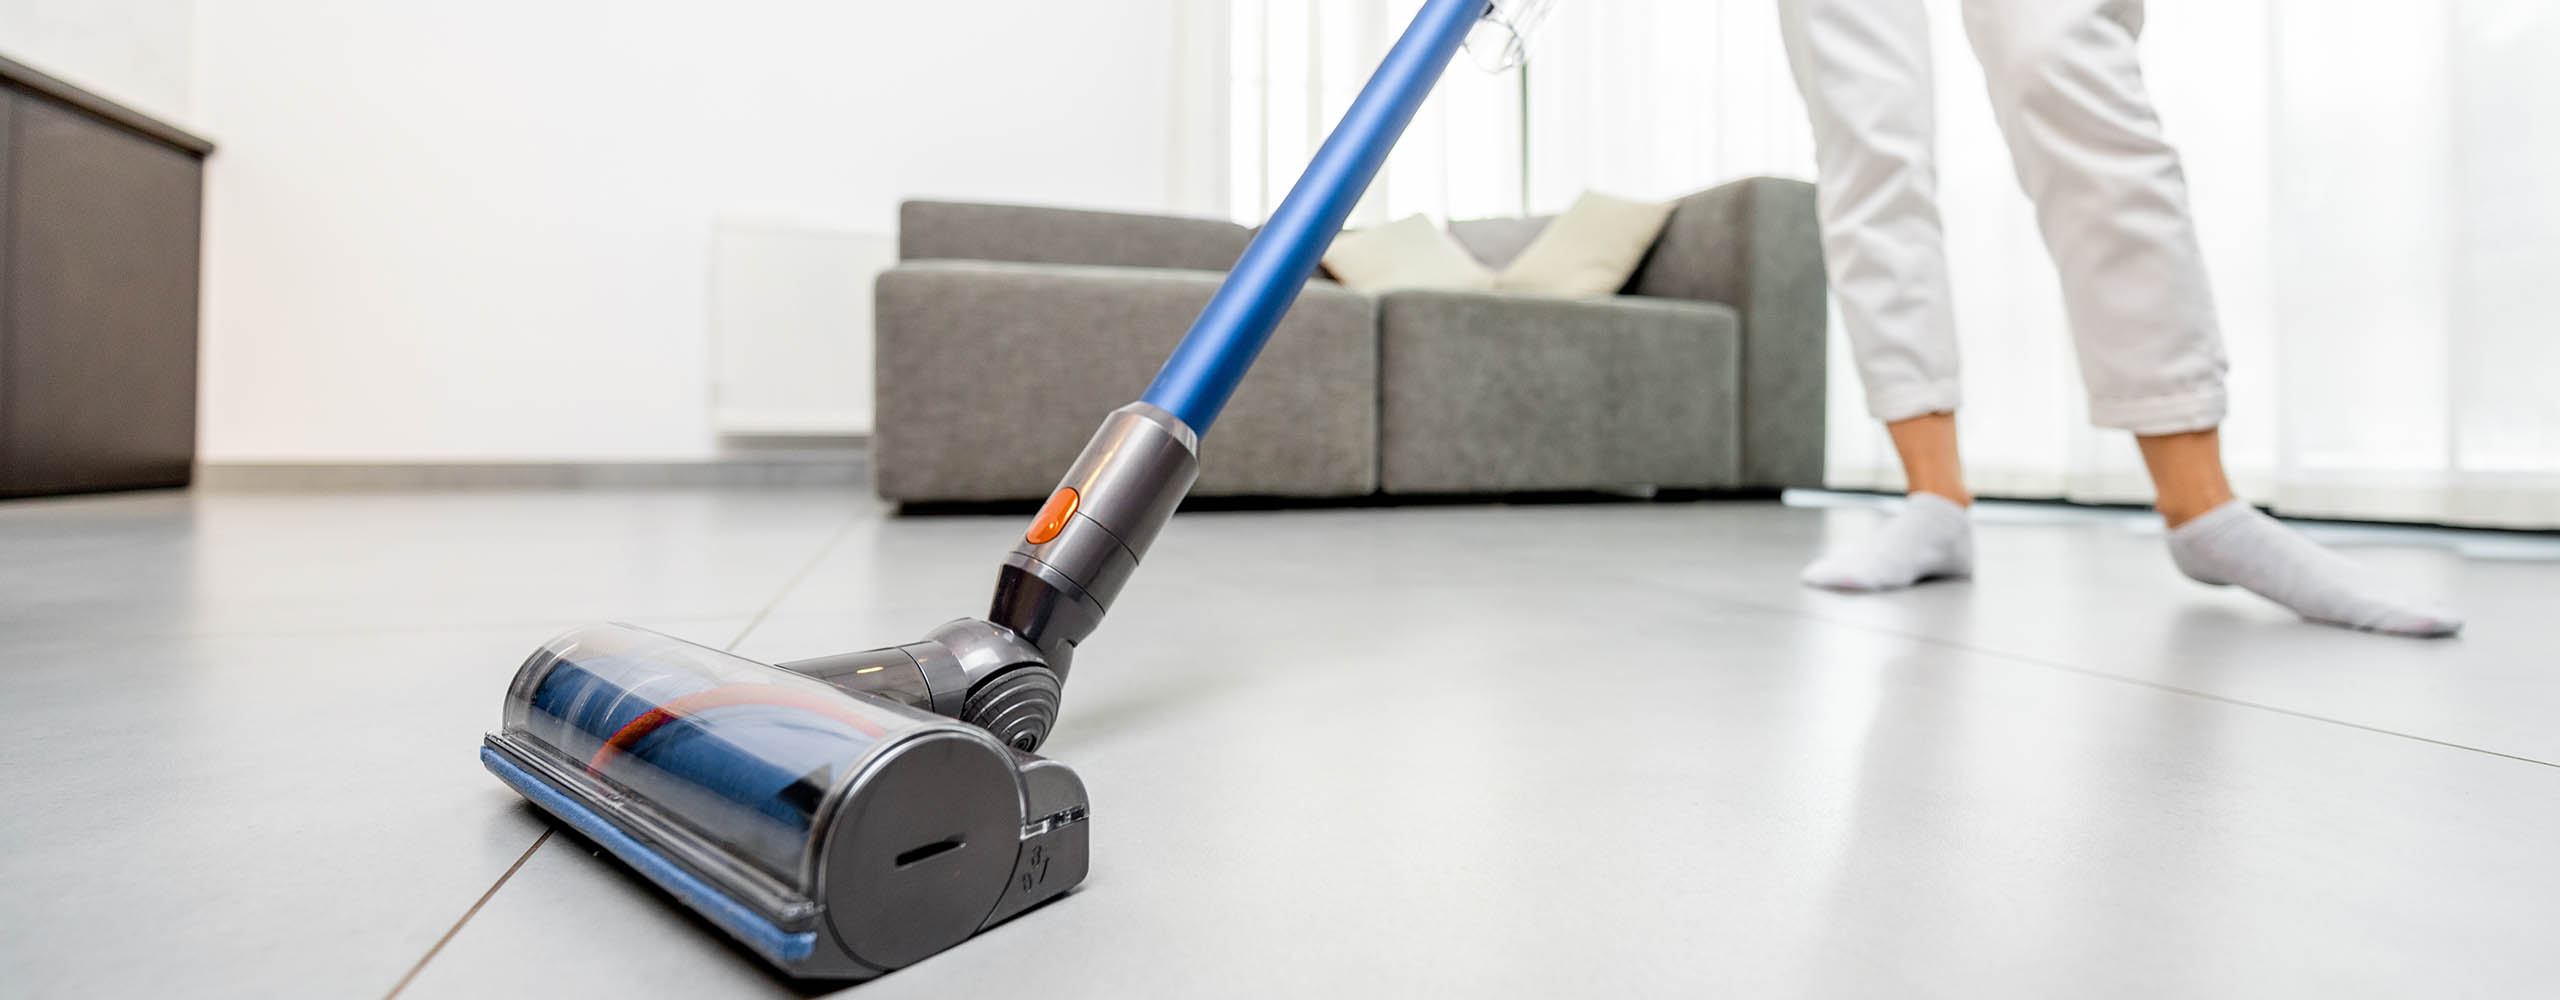 Eine Person saugt in einem Wohnzimmer mit einem kabellosen Staubsauger den Boden.